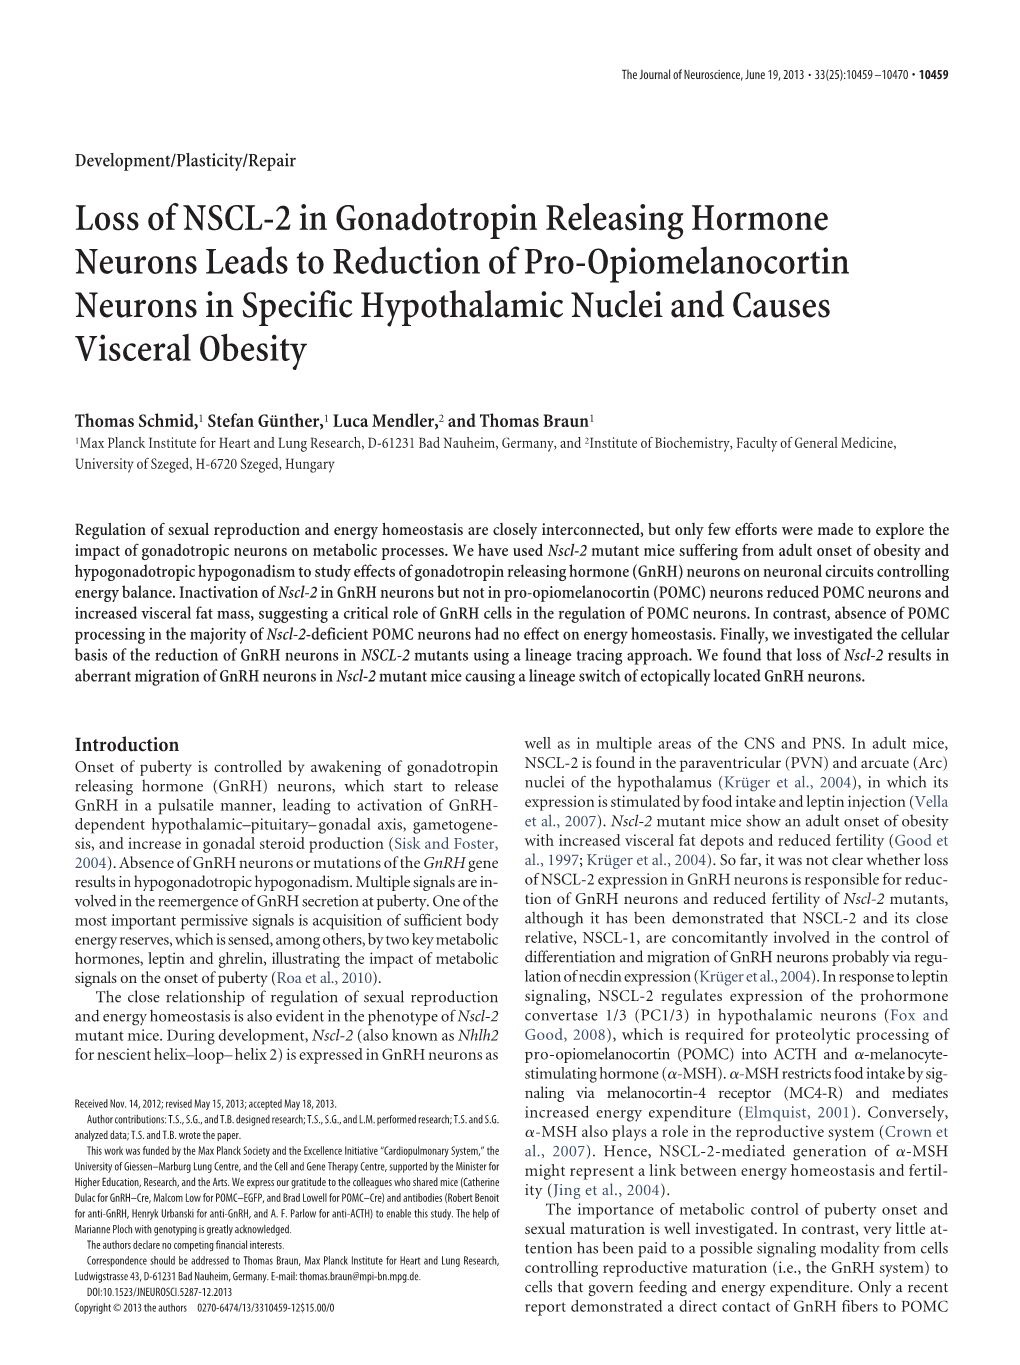 Loss of NSCL-2 in Gonadotropin Releasing Hormone Neurons